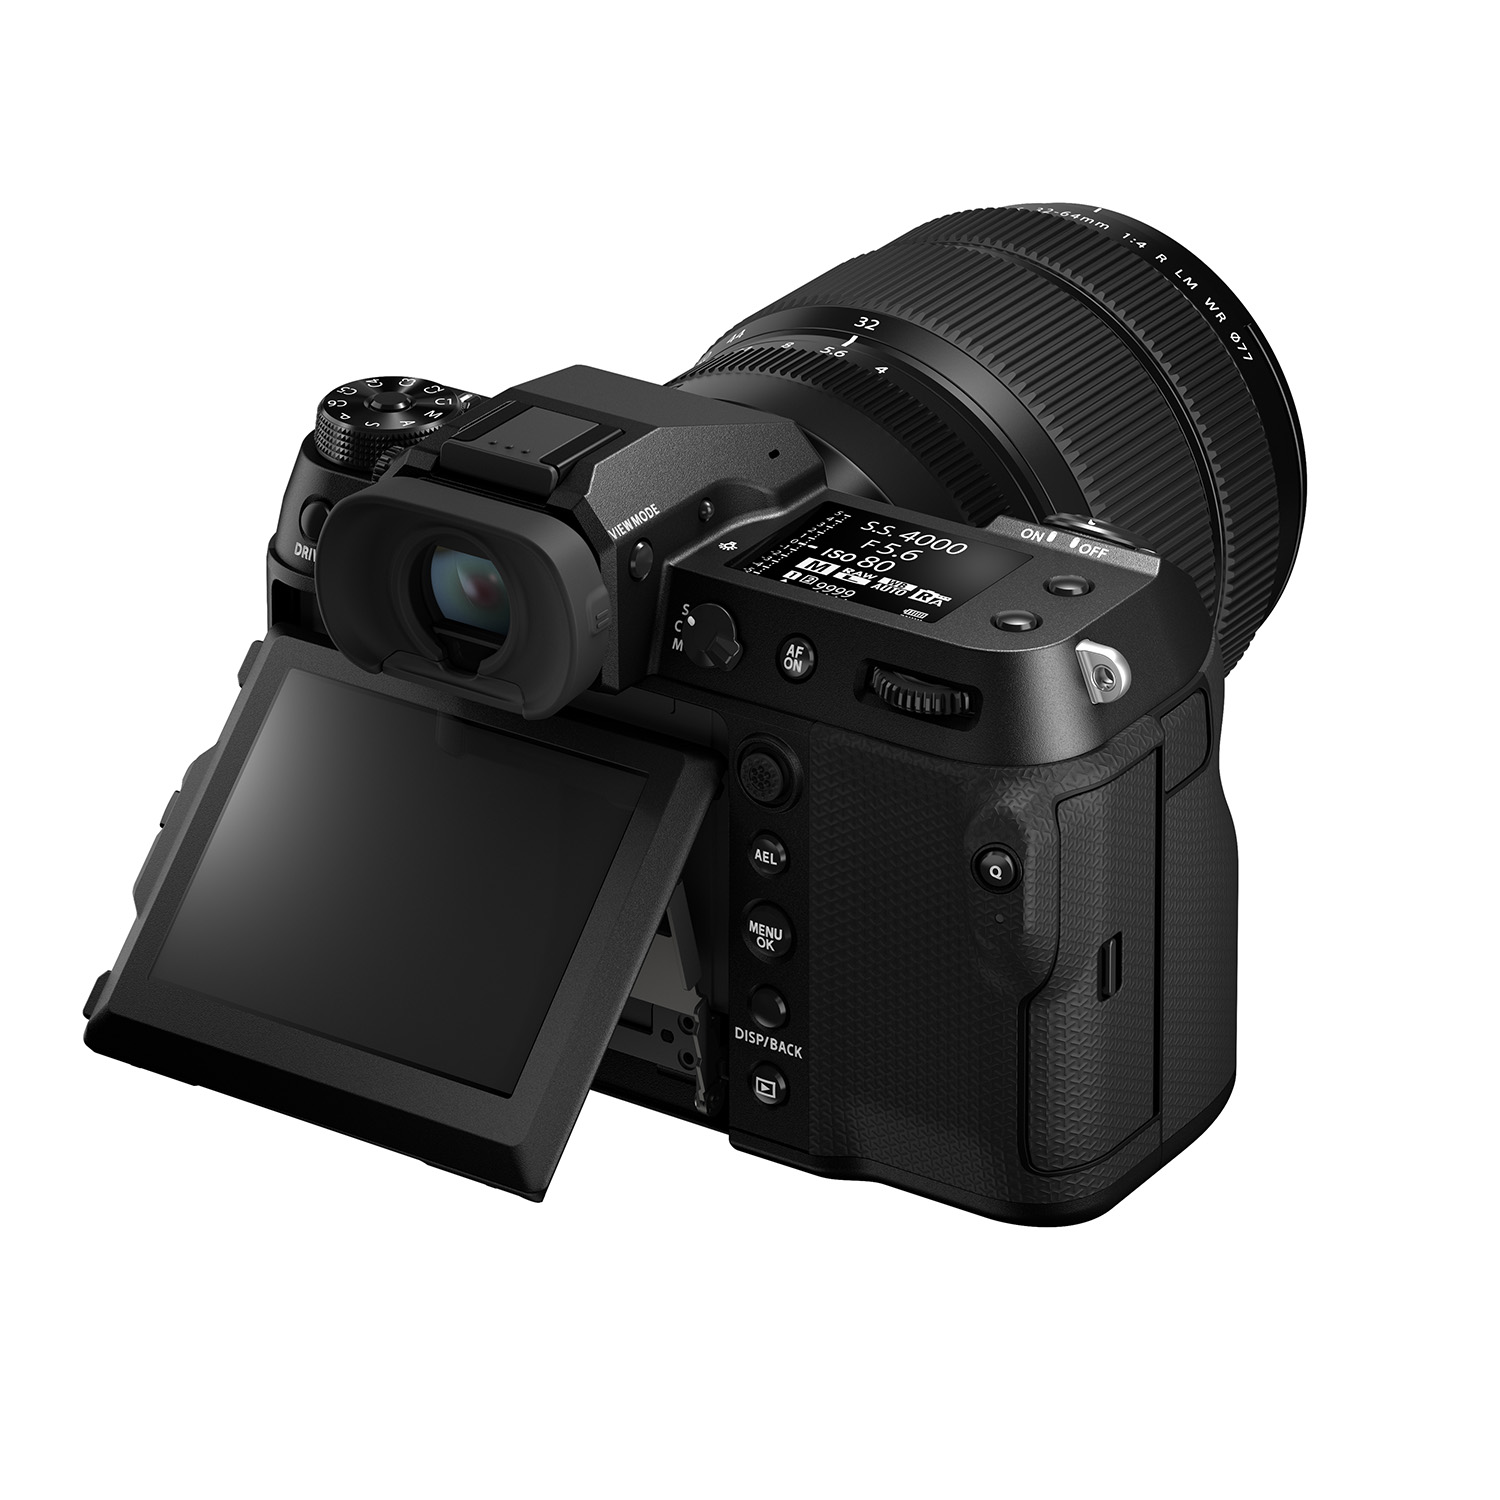 Снимок камеры Fujifilm GFX100S II на белом фоне, вид сзади